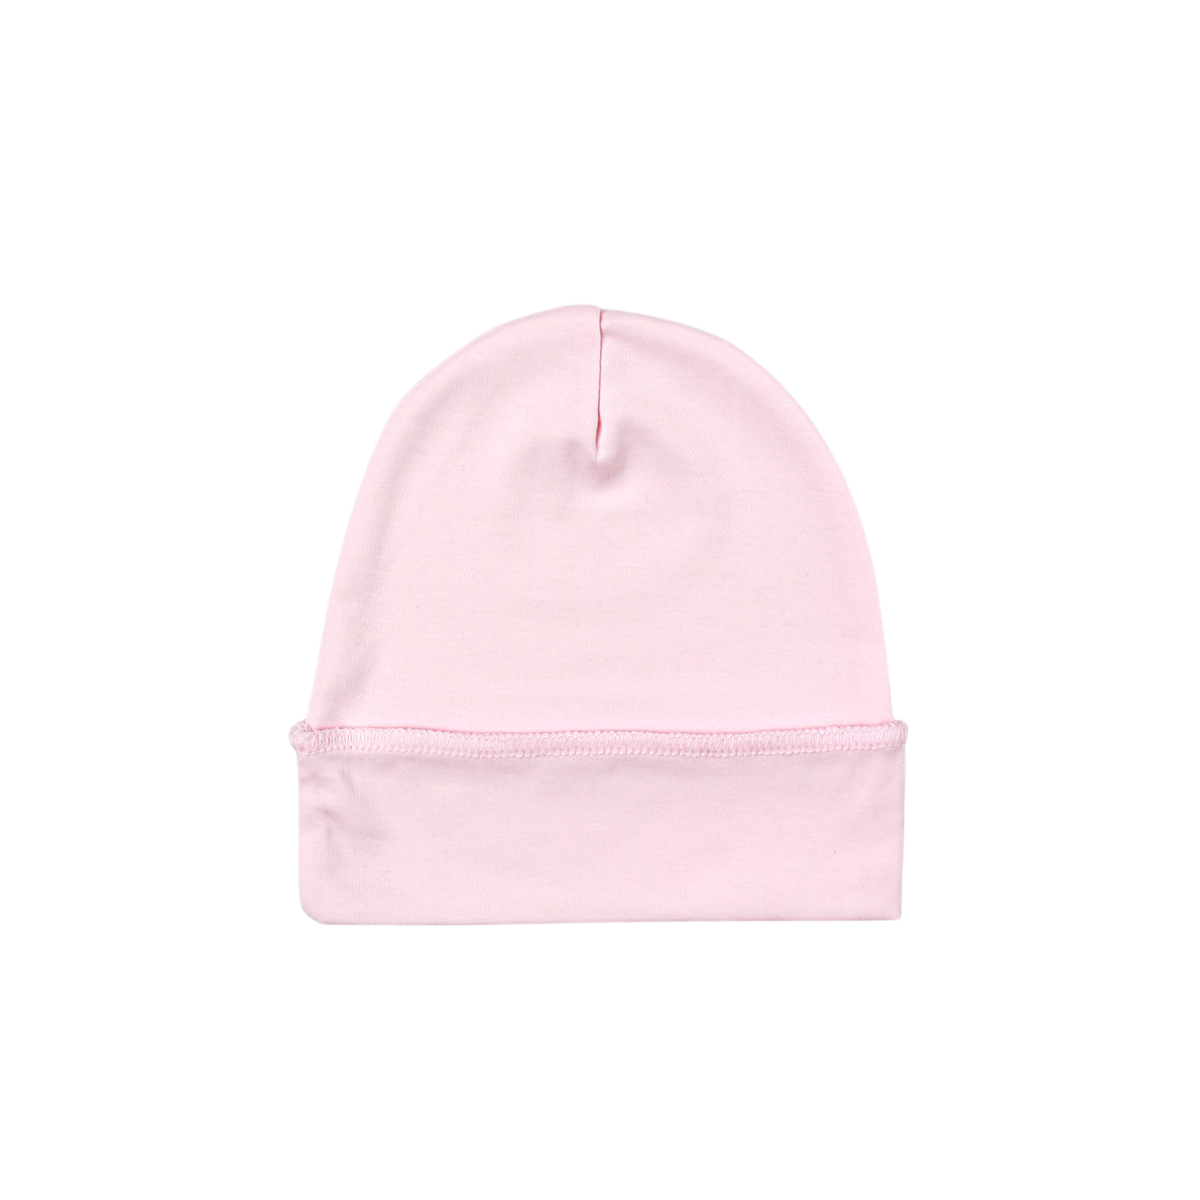 Pink Newborn Hat in Pima Cotton